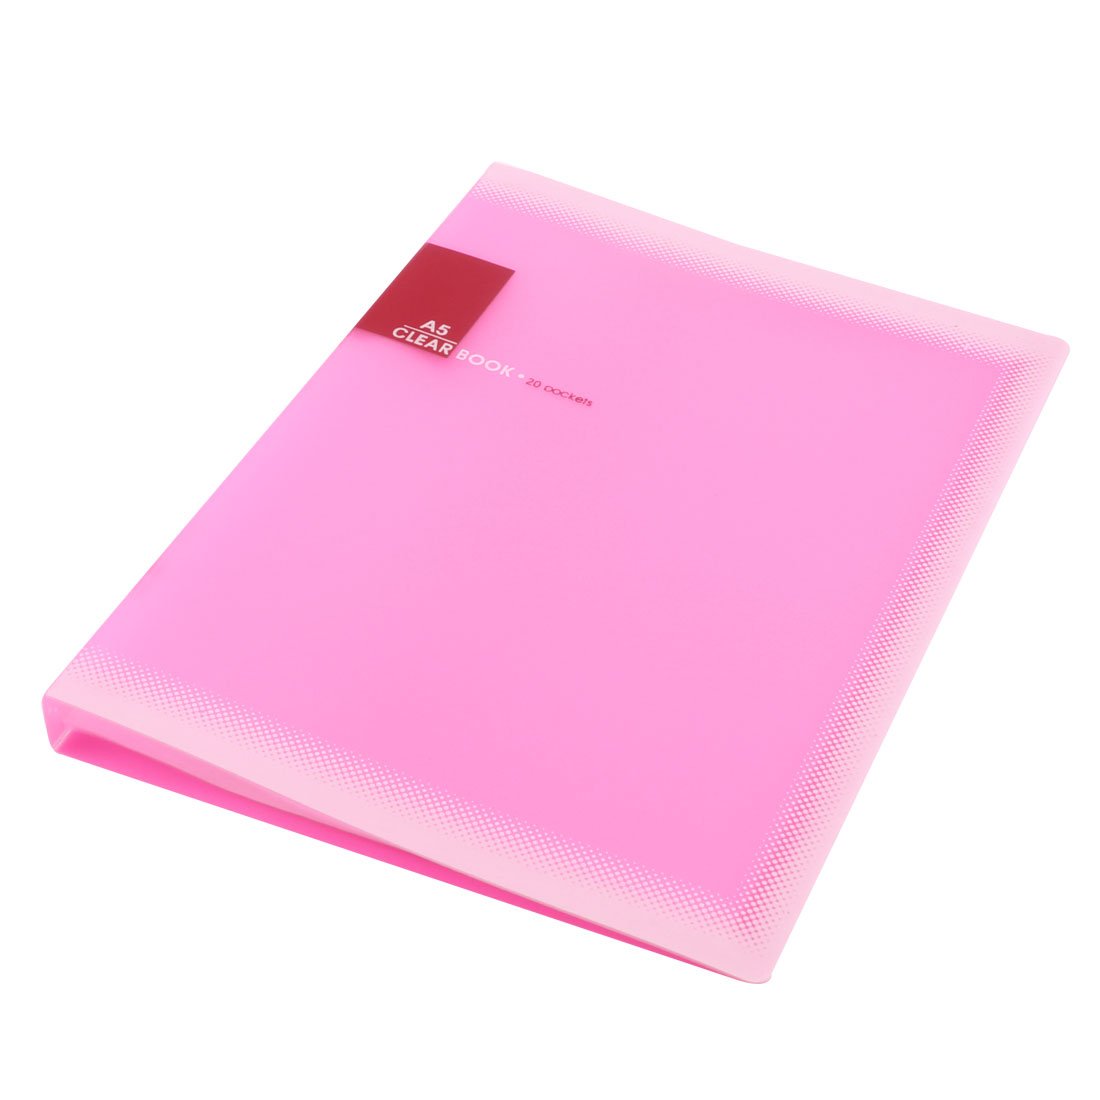 Plastic A5 Paper 20 Pockets File Document Folder Holder, Pink